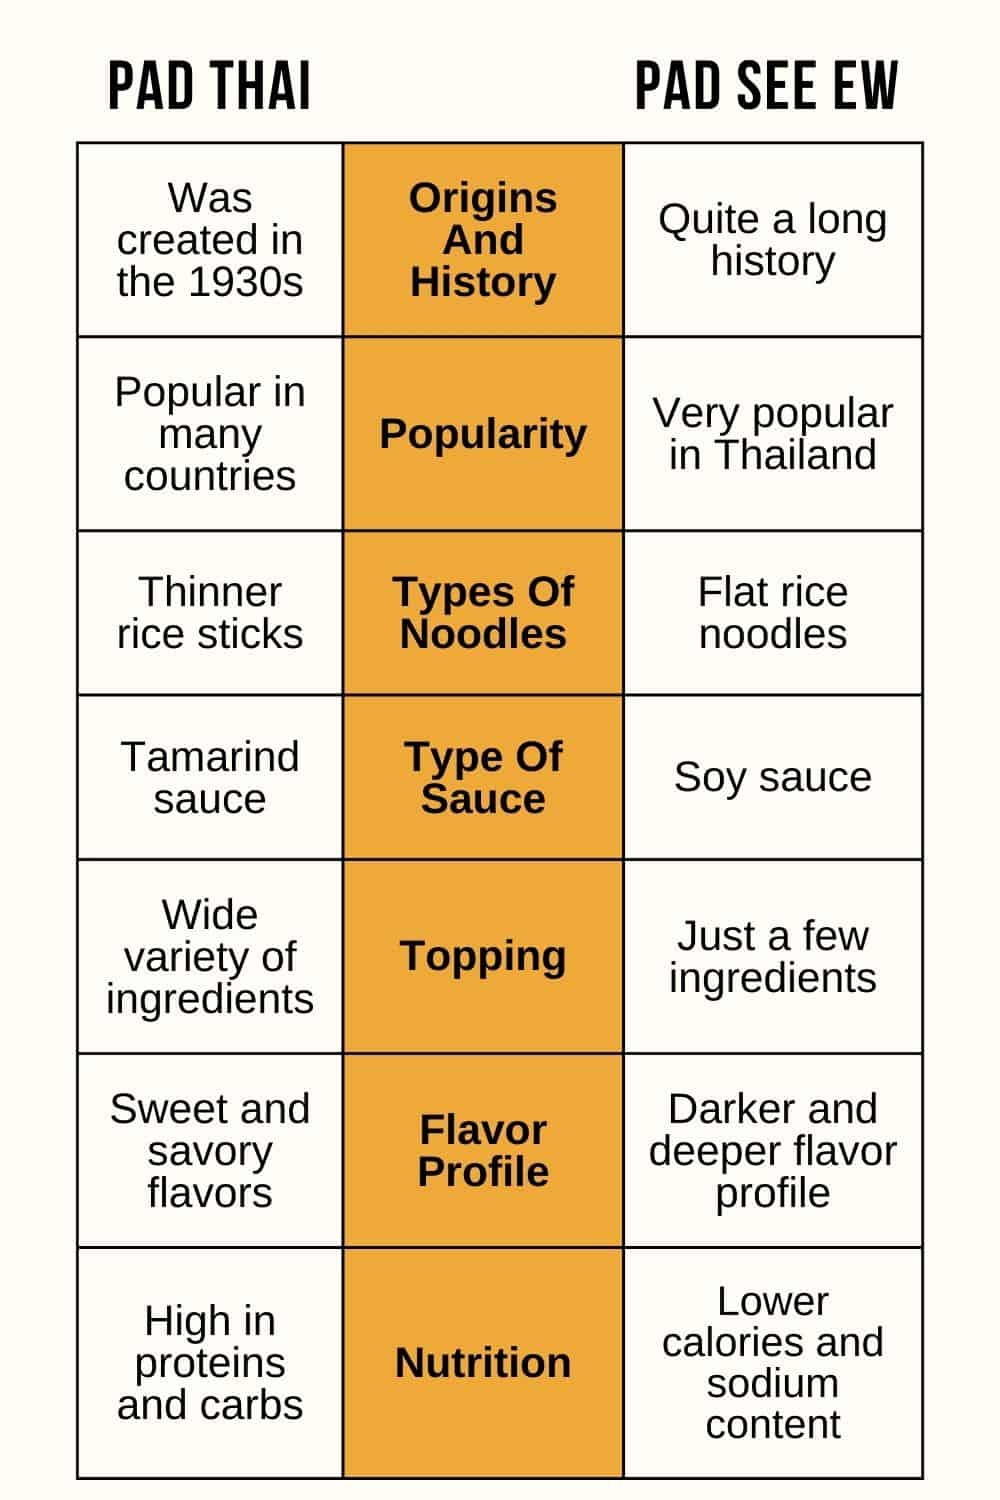 pad see ew vs pad thai infographic